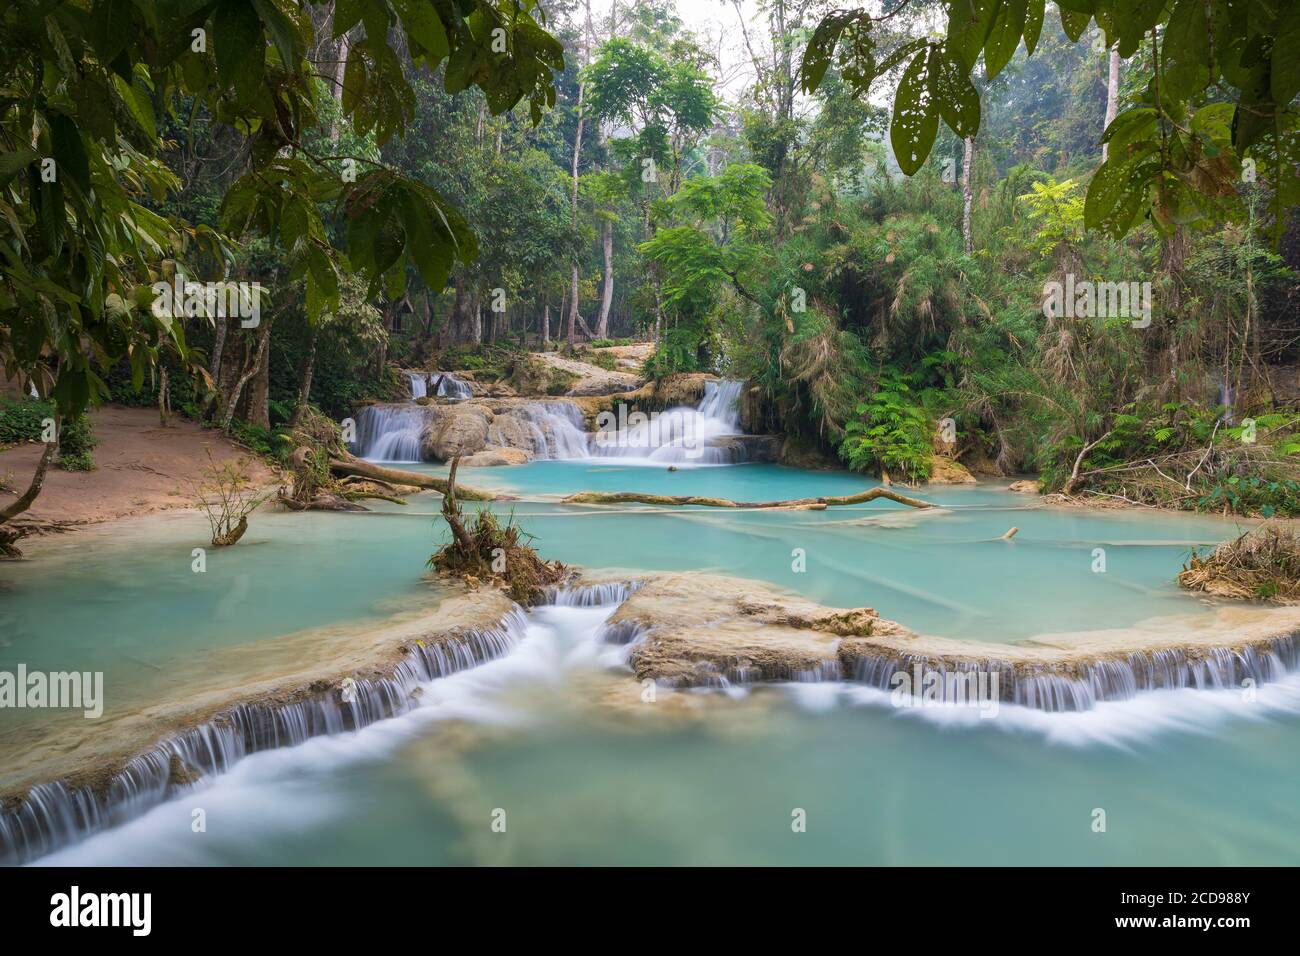 Laos, Luang Prabang province, Kuang Si falls Stock Photo